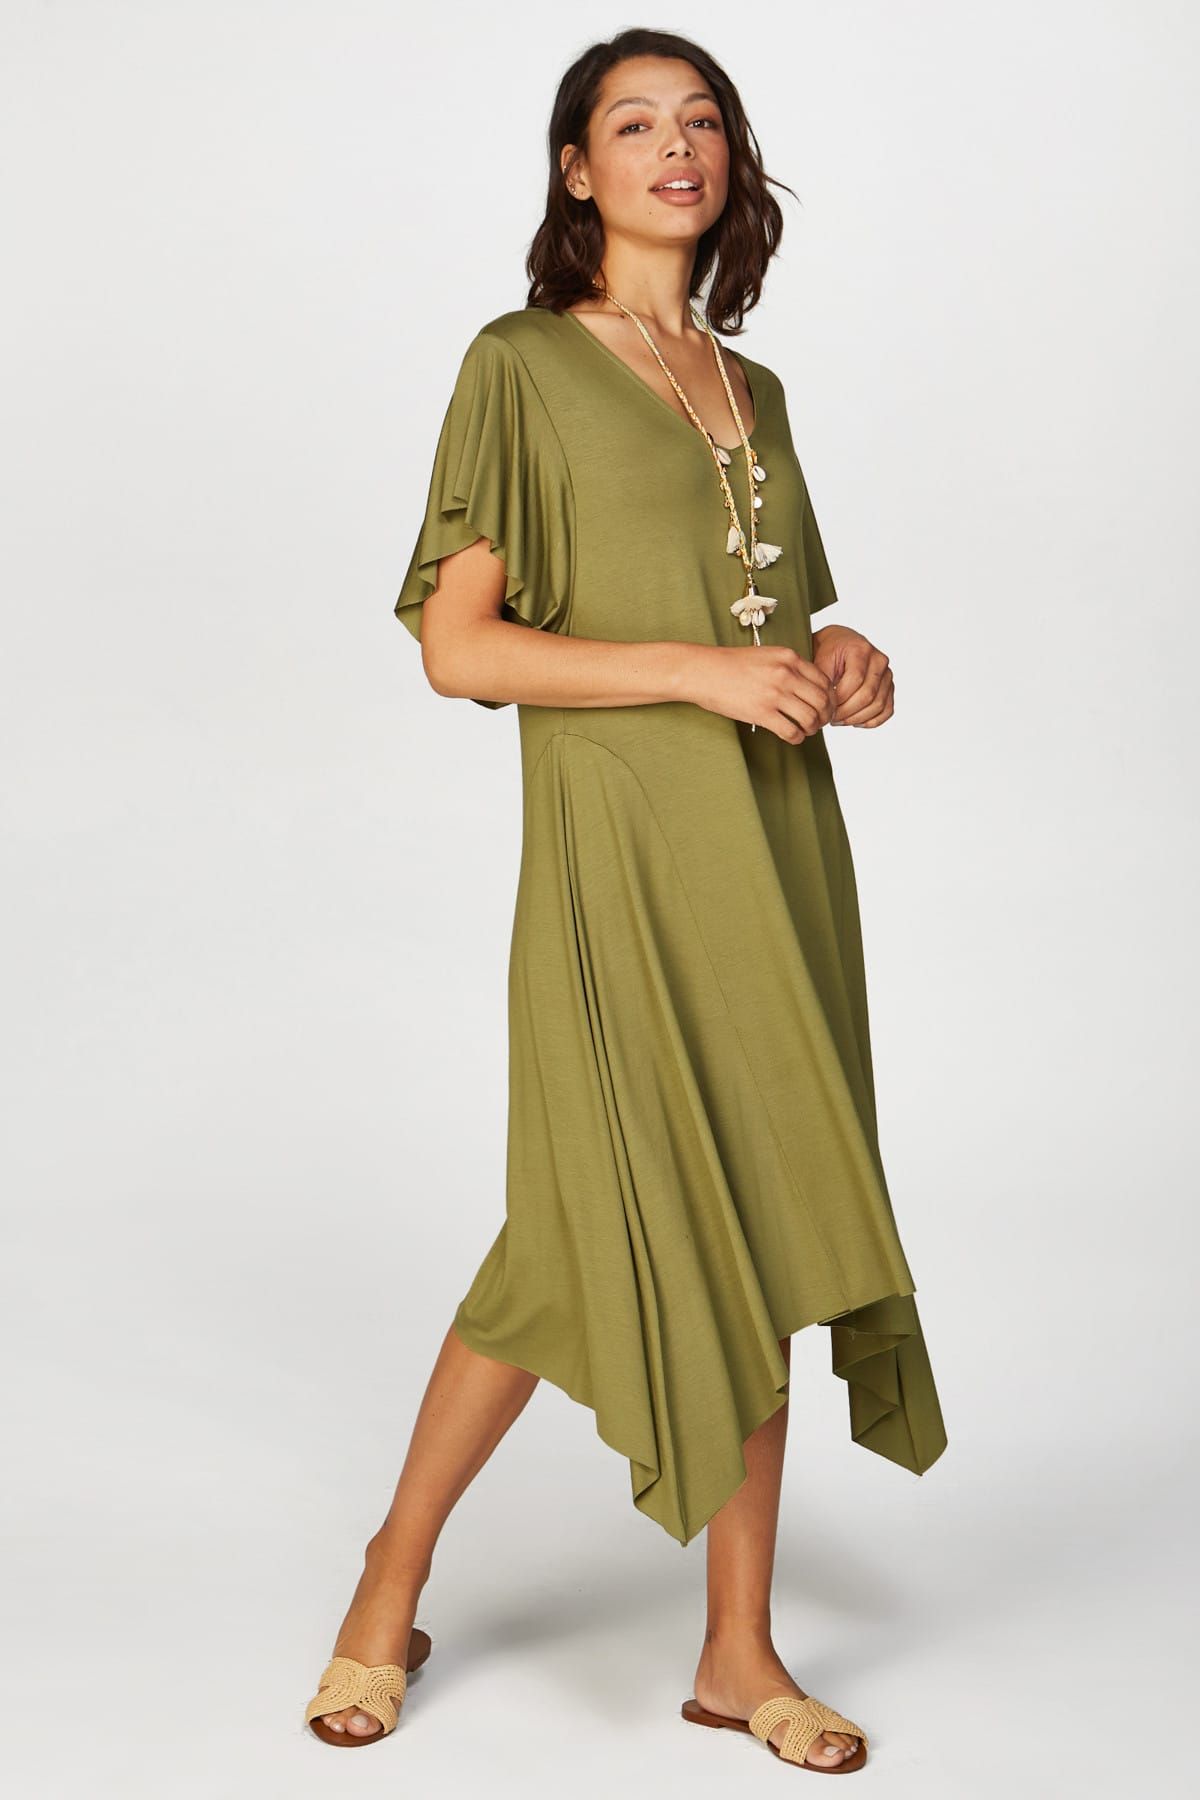 Faik Sönmez Kadın Yeşil Volanlı Elbise 38268 U38268